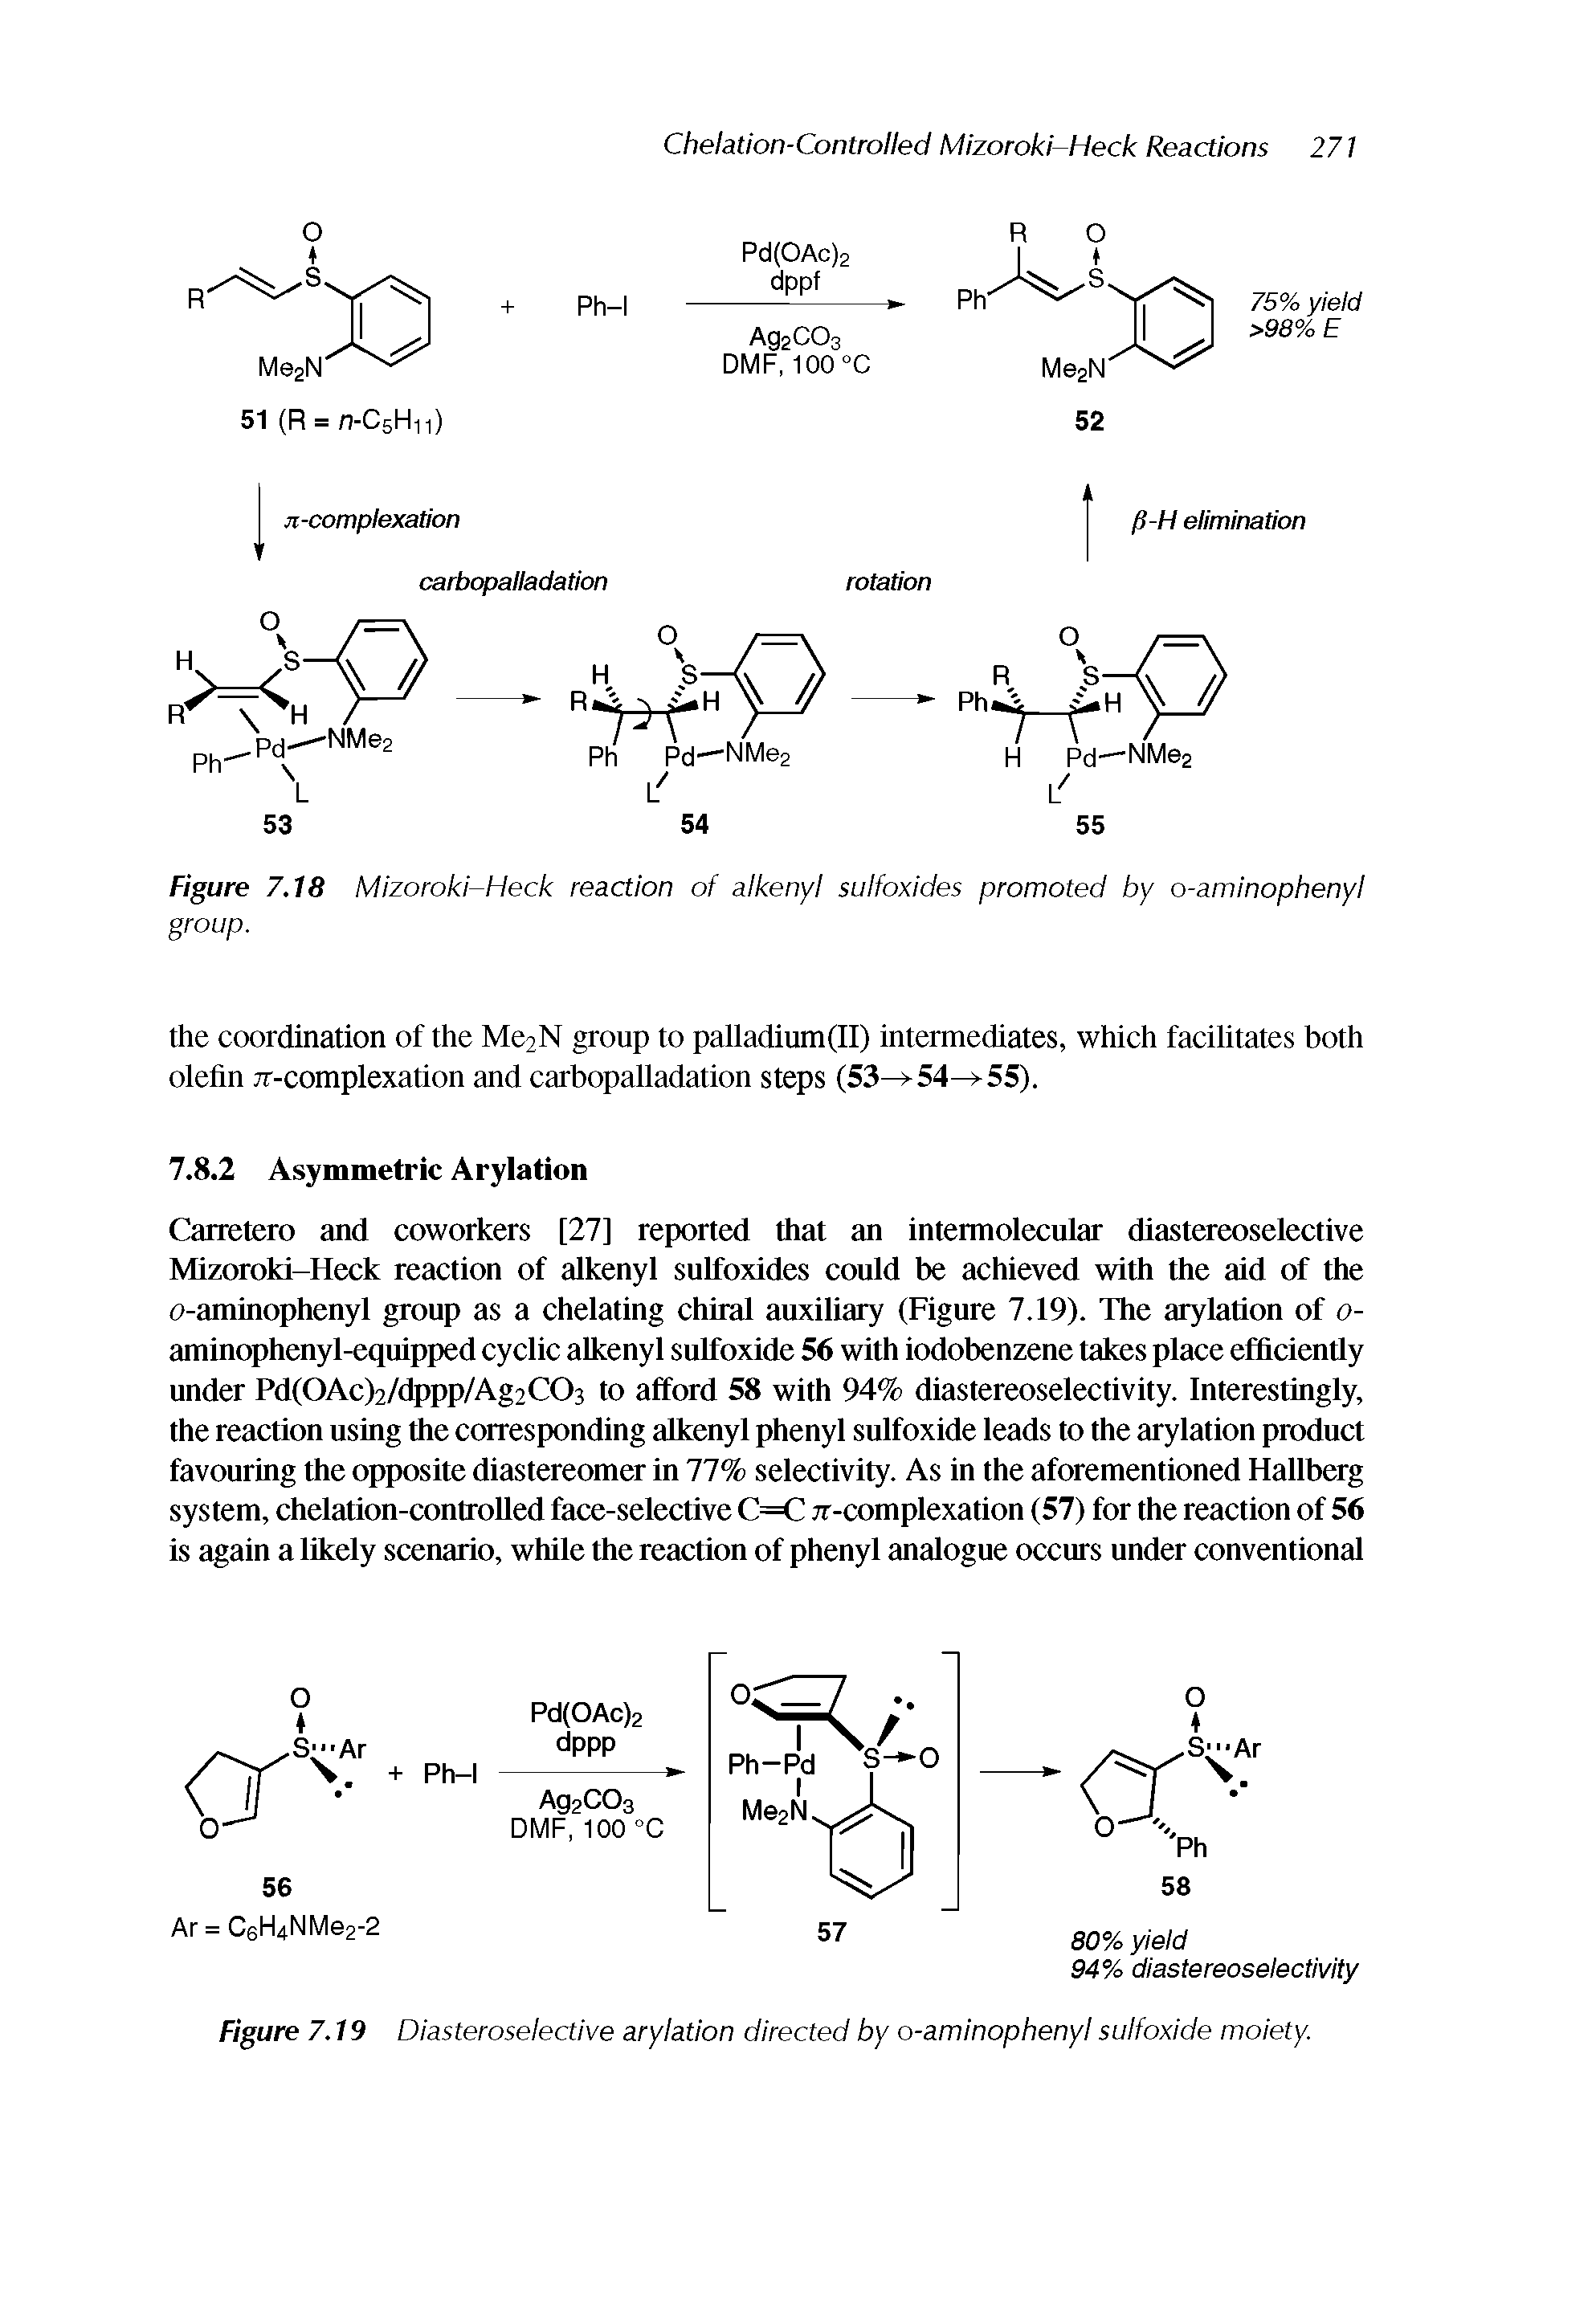 Figure 7,18 Mizoroki-Heck reaction of alkenyl sulfoxides promoted by o-aminophenyl group.